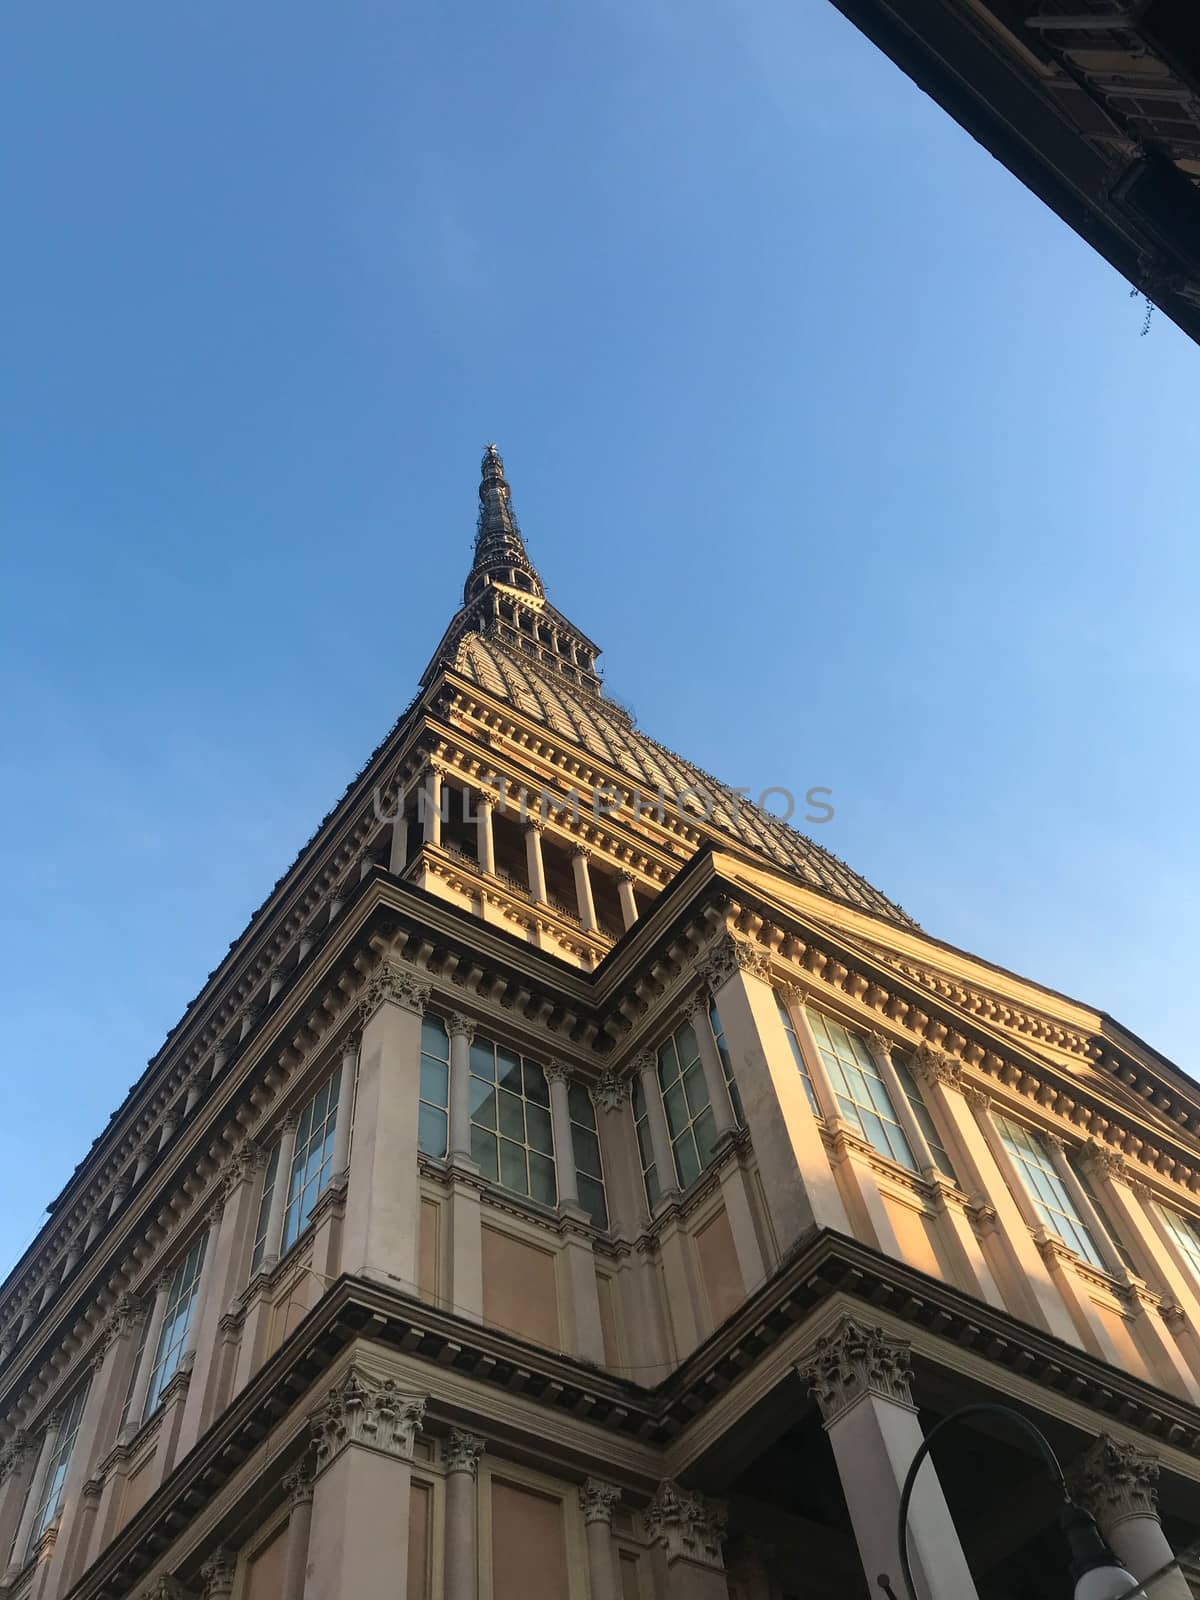 Mole Antonelliana, Turin building in the historic center by cosca